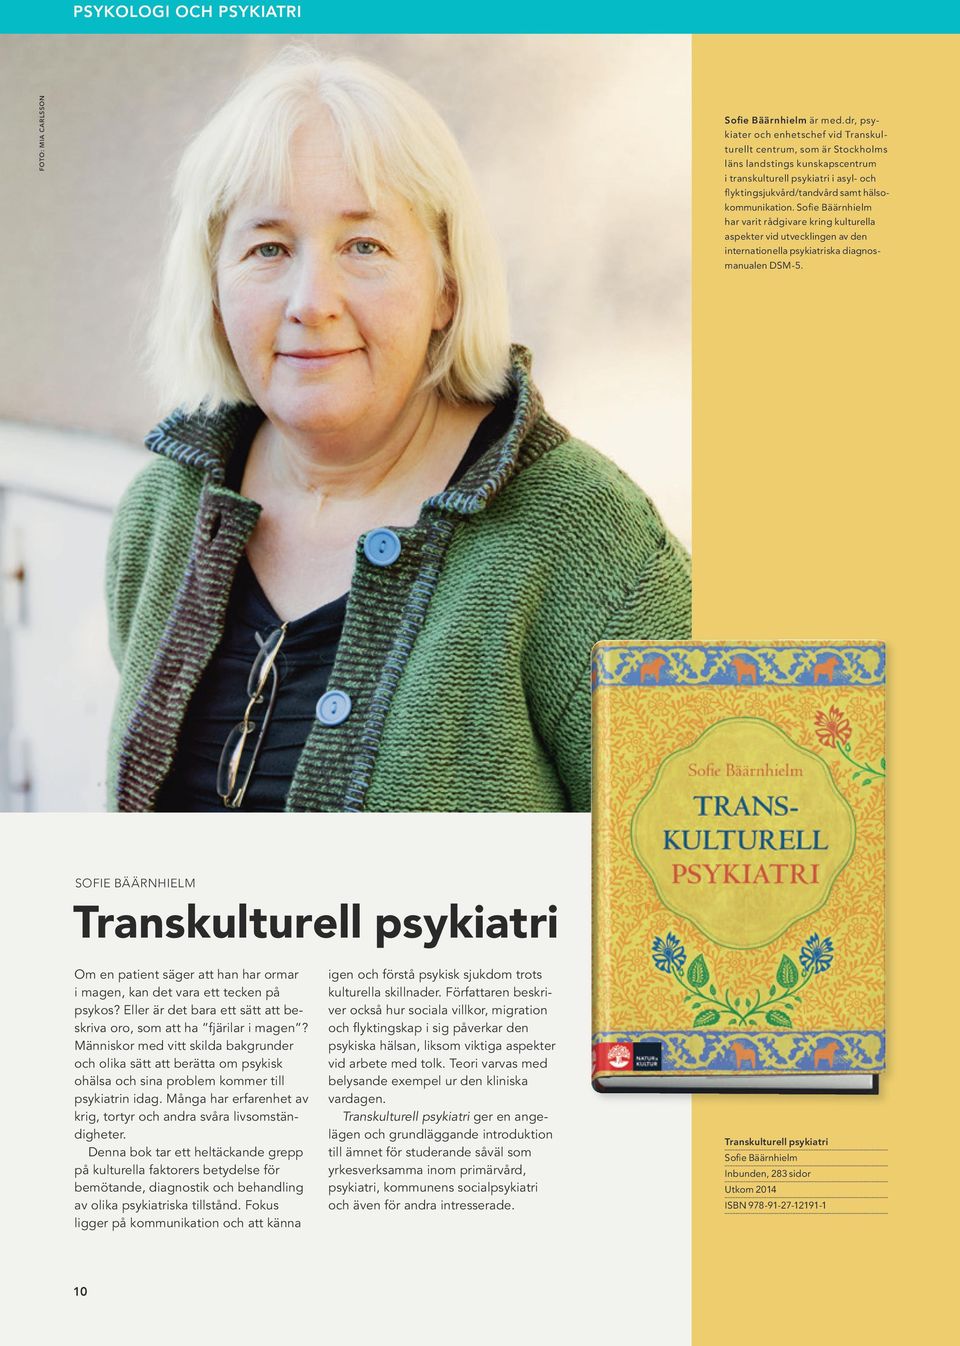 Sofie Bäärnhielm har varit rådgivare kring kulturella aspekter vid utvecklingen av den internationella psykiatriska diagnosmanualen DSM-5.